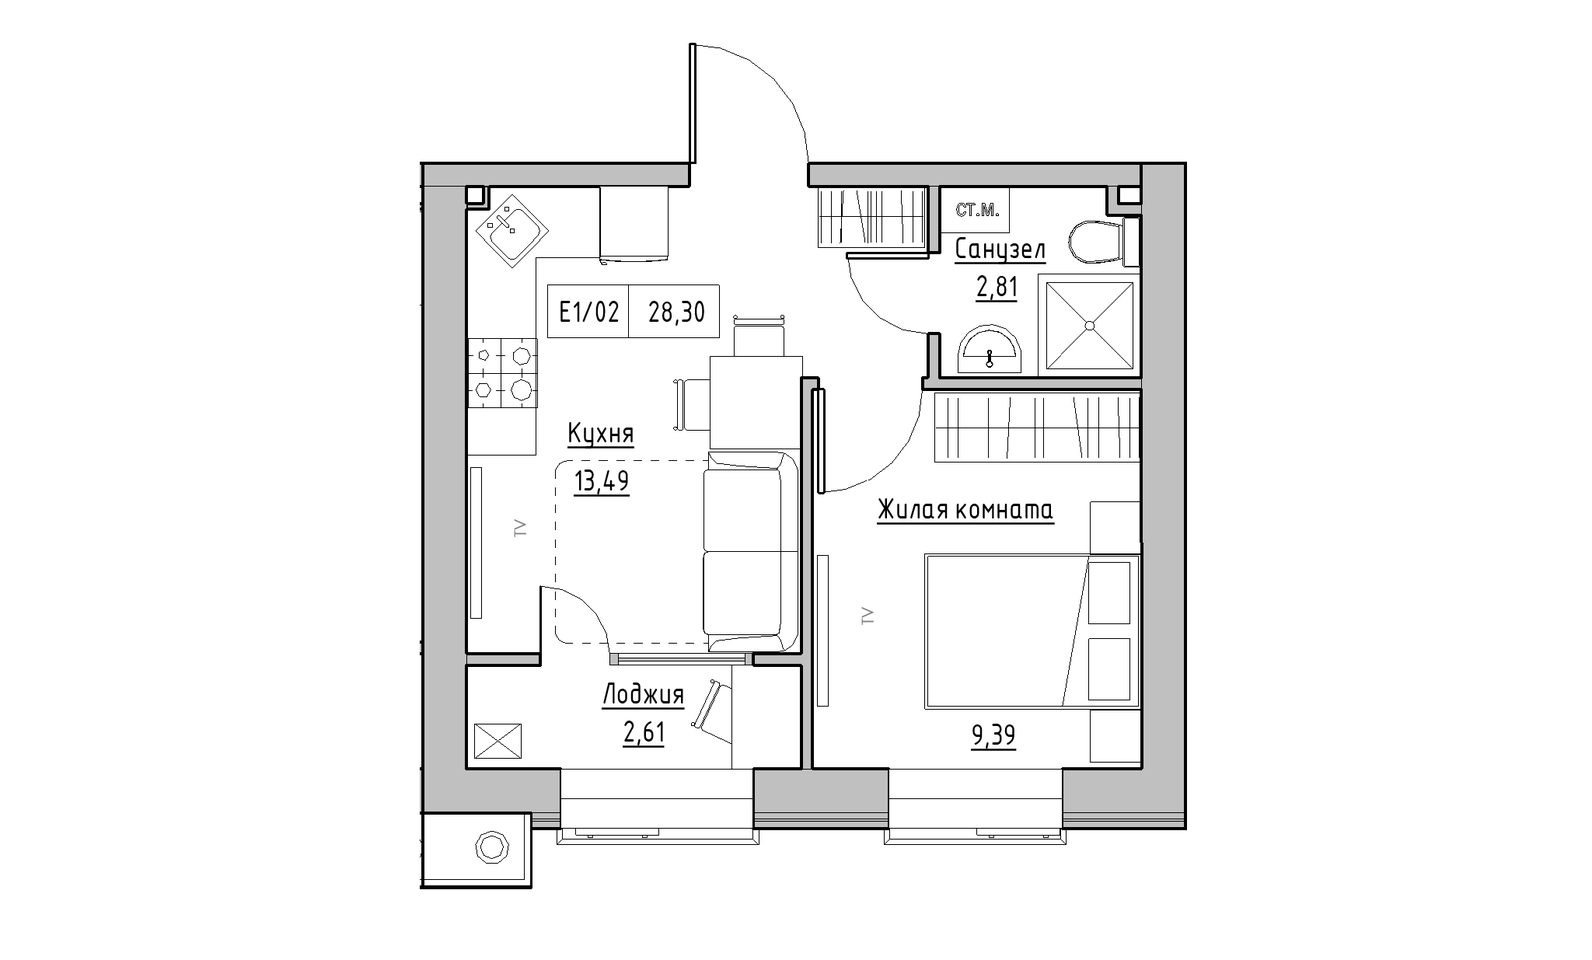 Планування 1-к квартира площею 28.3м2, KS-014-03/0001.